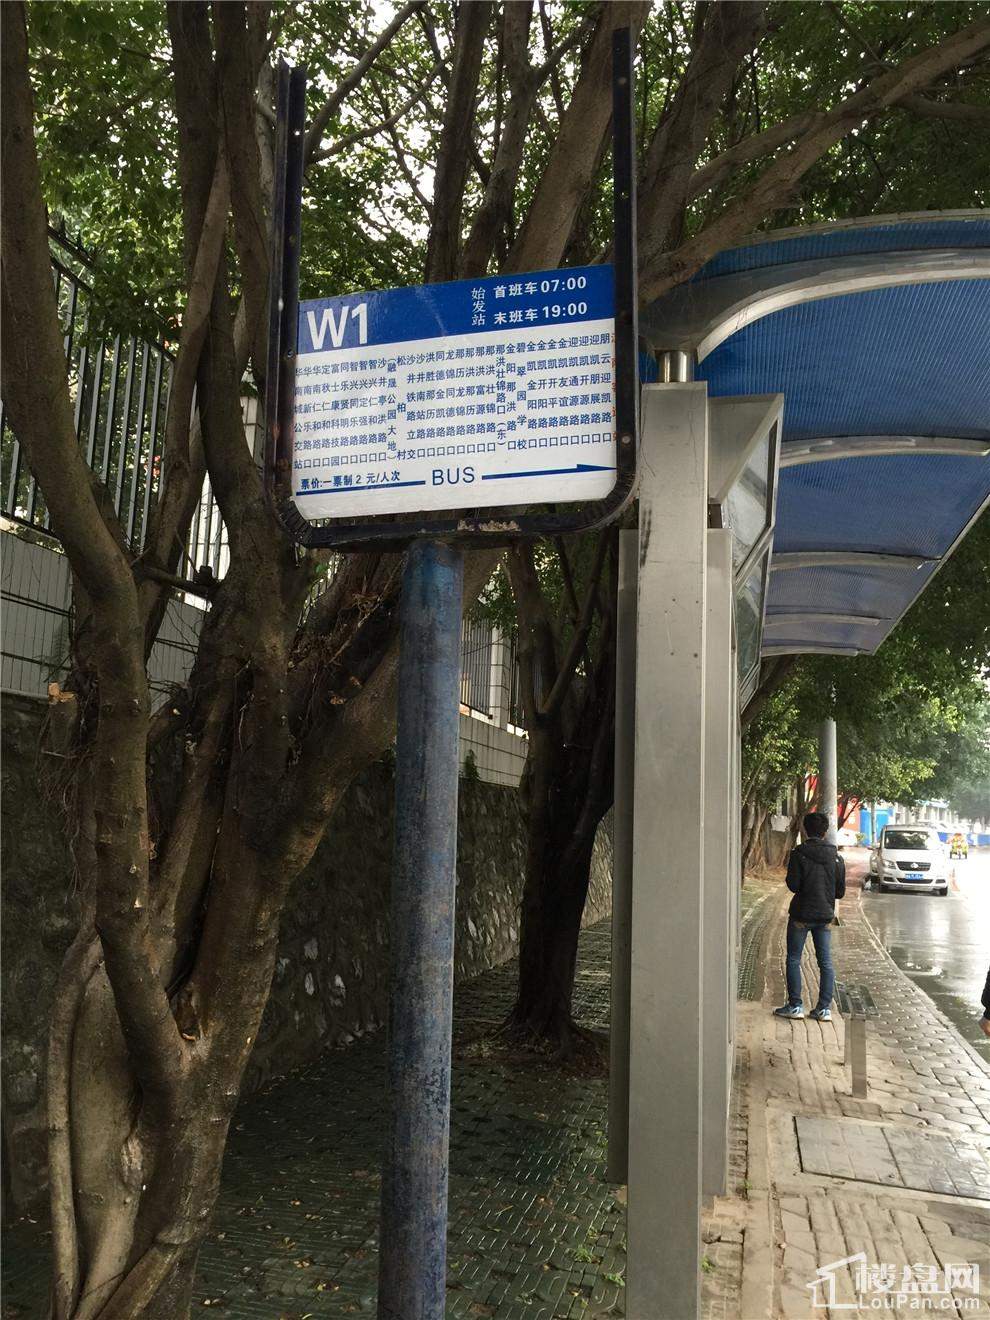 W1公车站牌